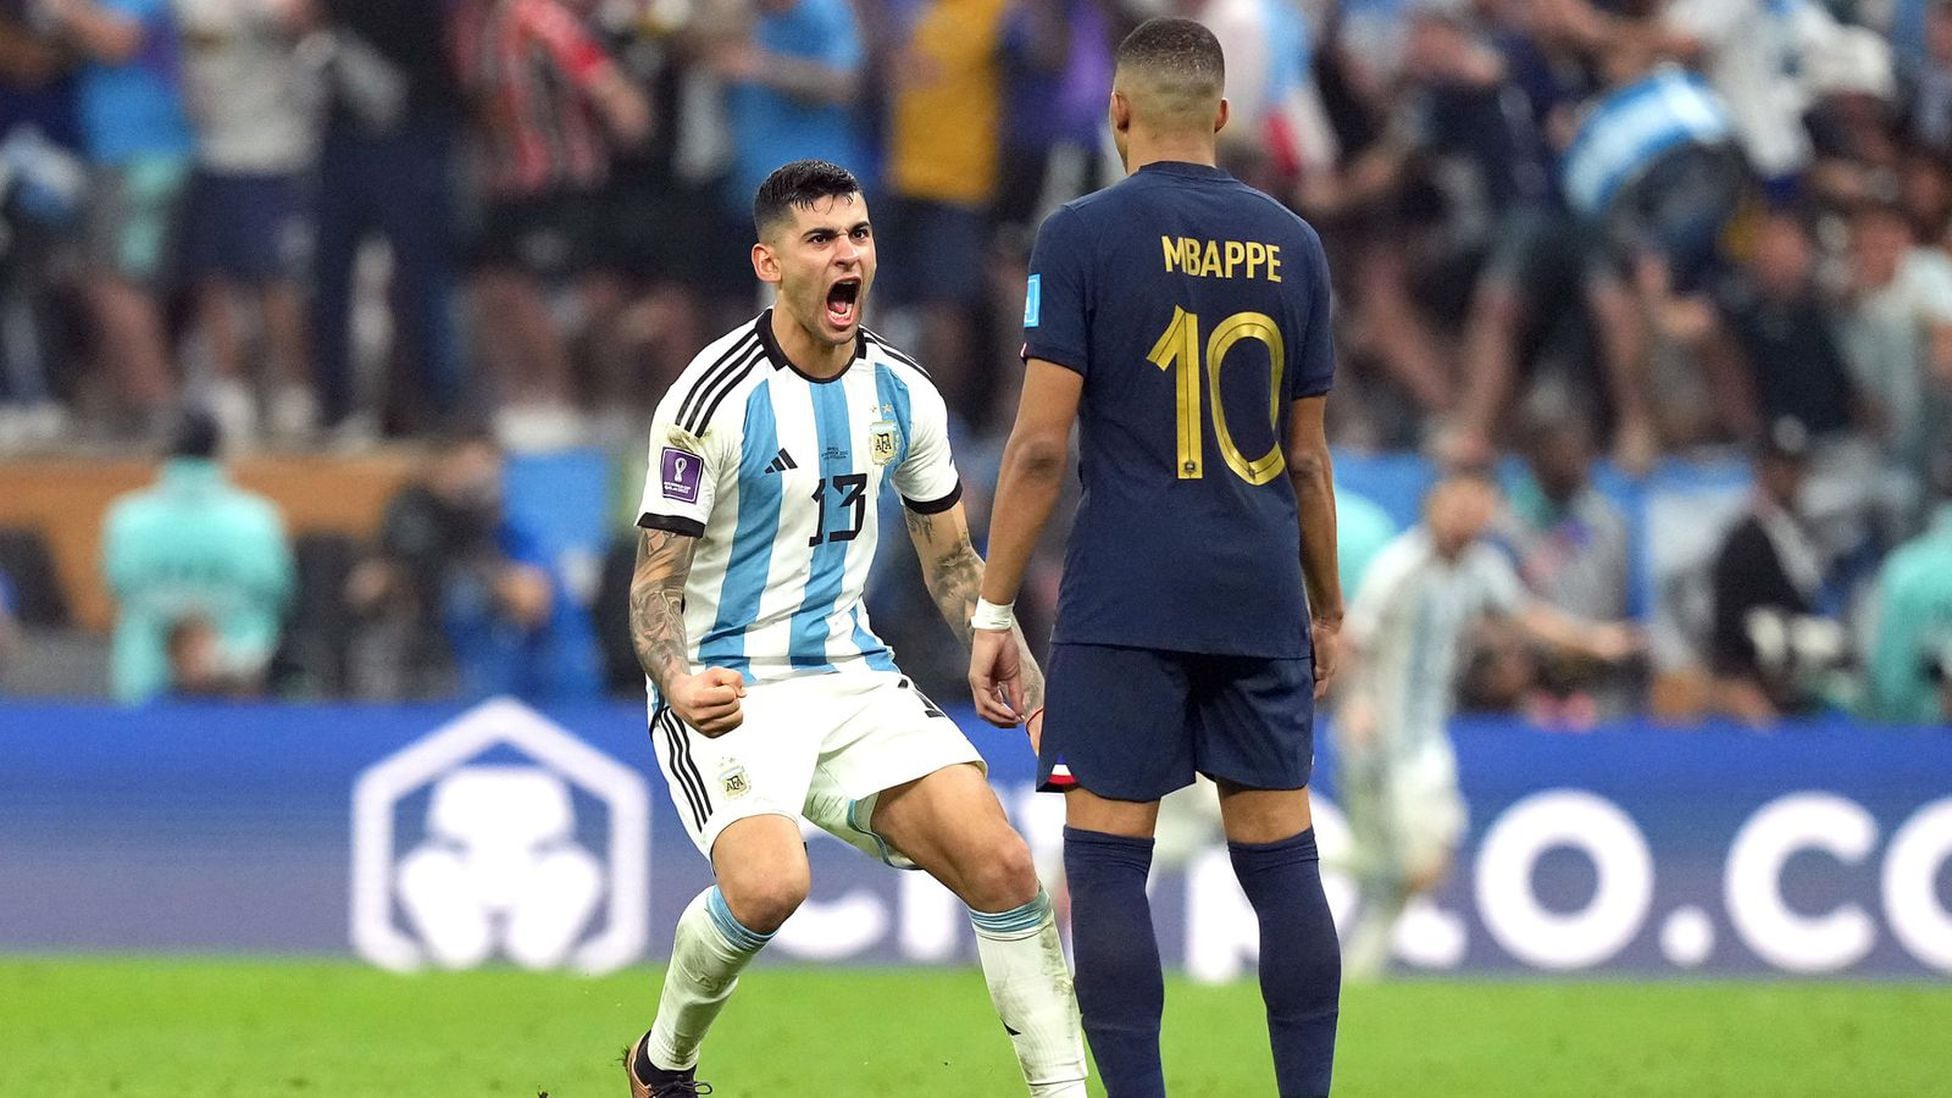 La razón por la que Cuti Romero le gritó en la cara a Mbappé - AS Argentina